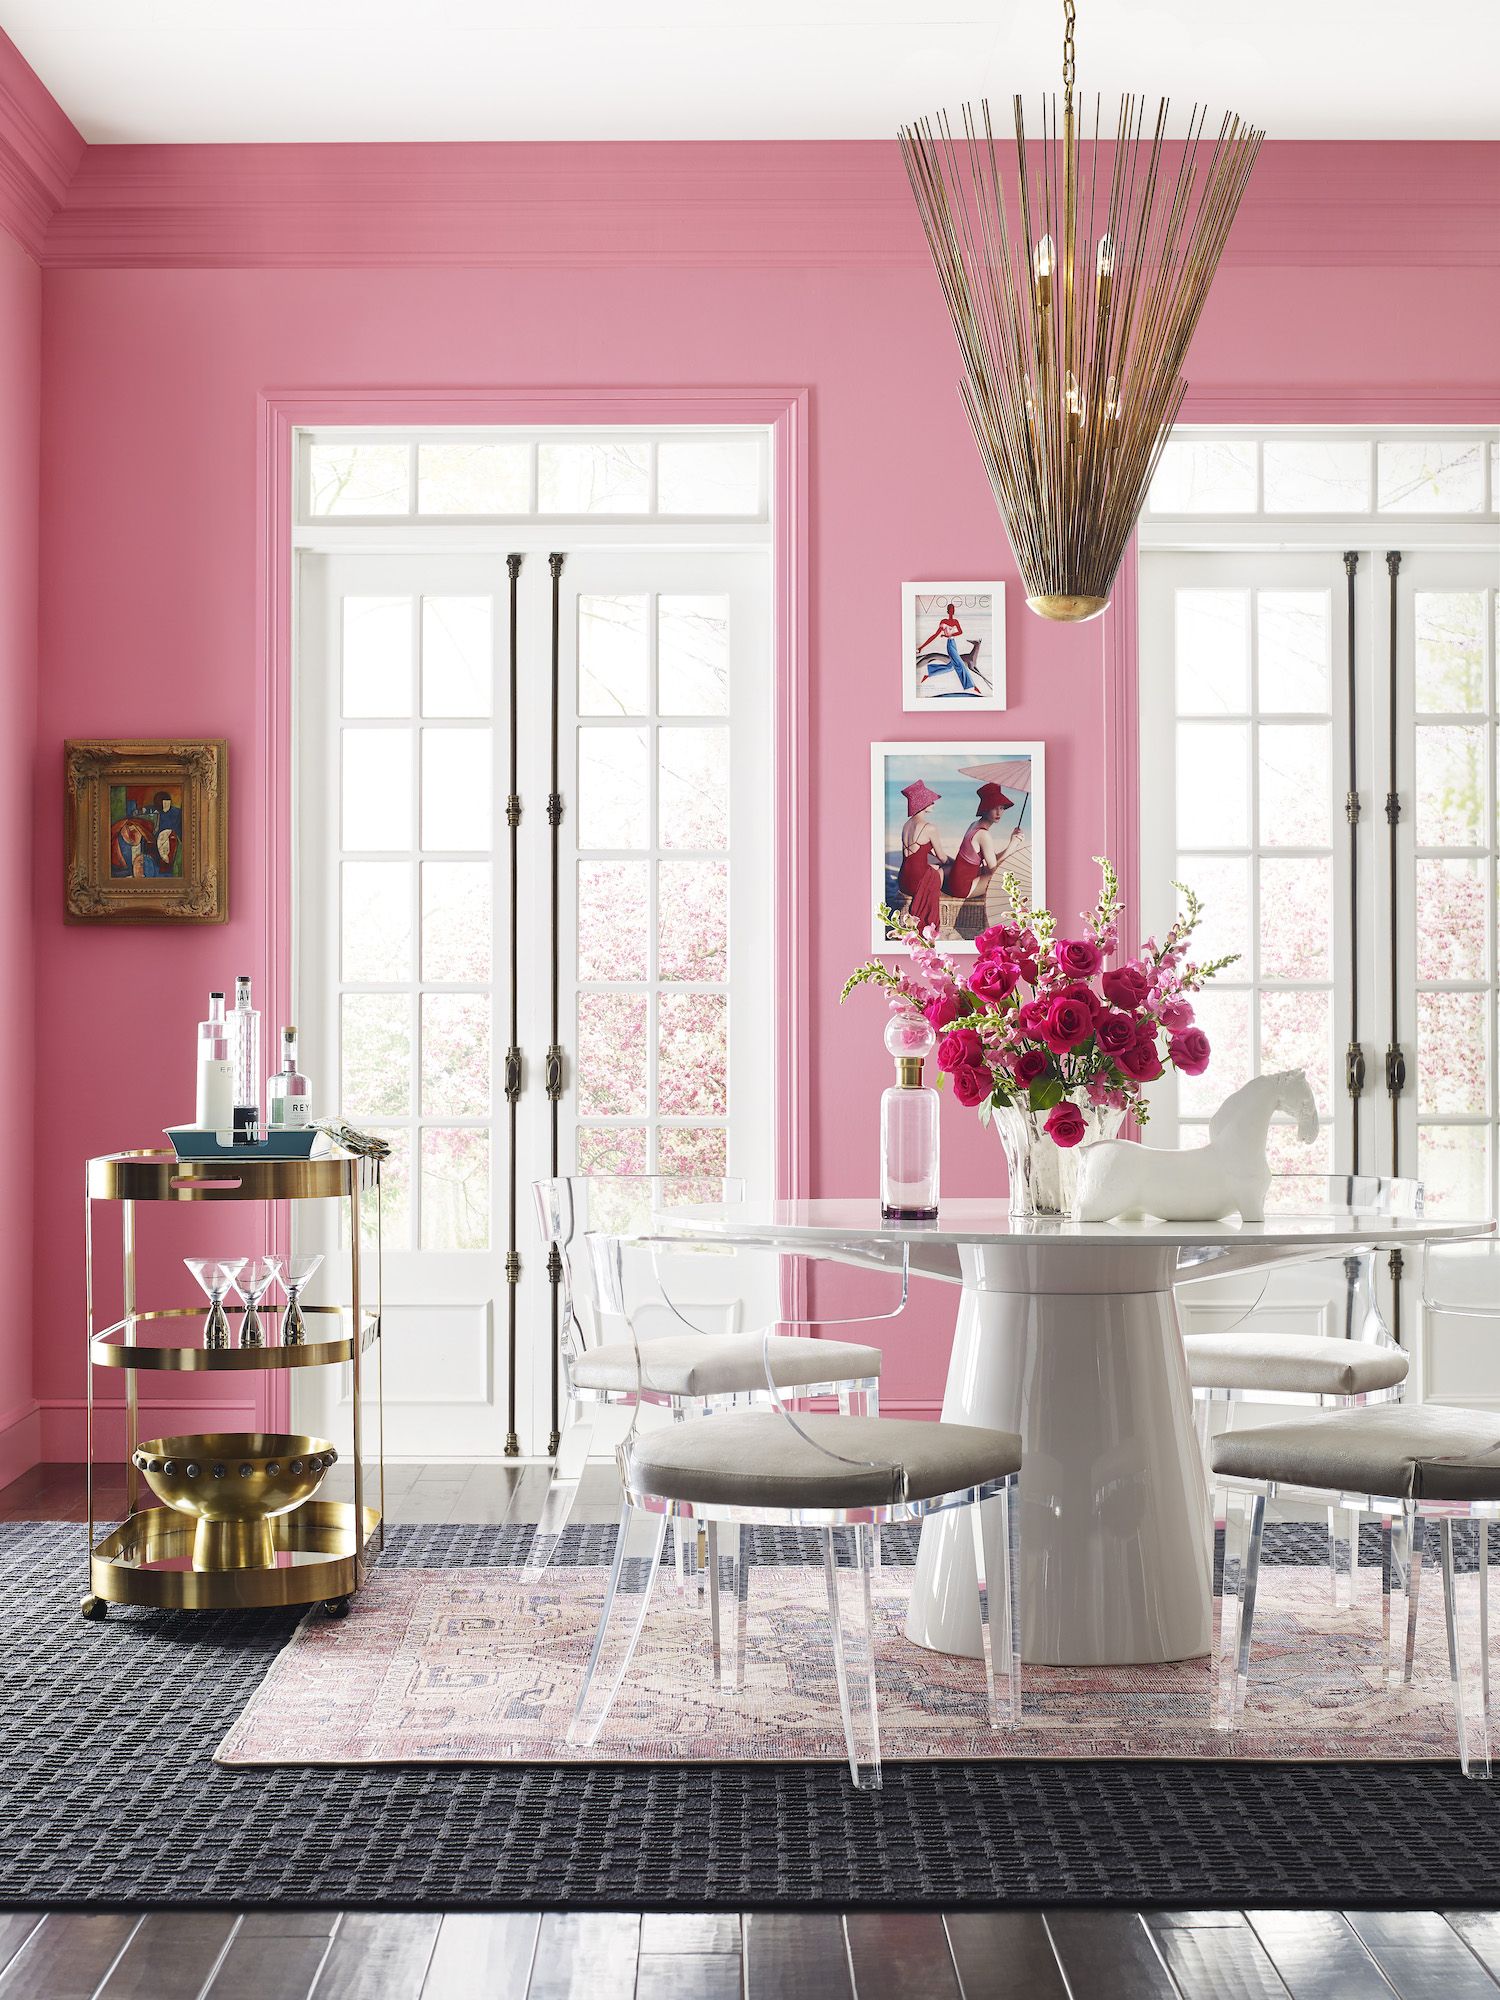 ห้องรับประทานอาหารที่มีผนังสีชมพูสดใส